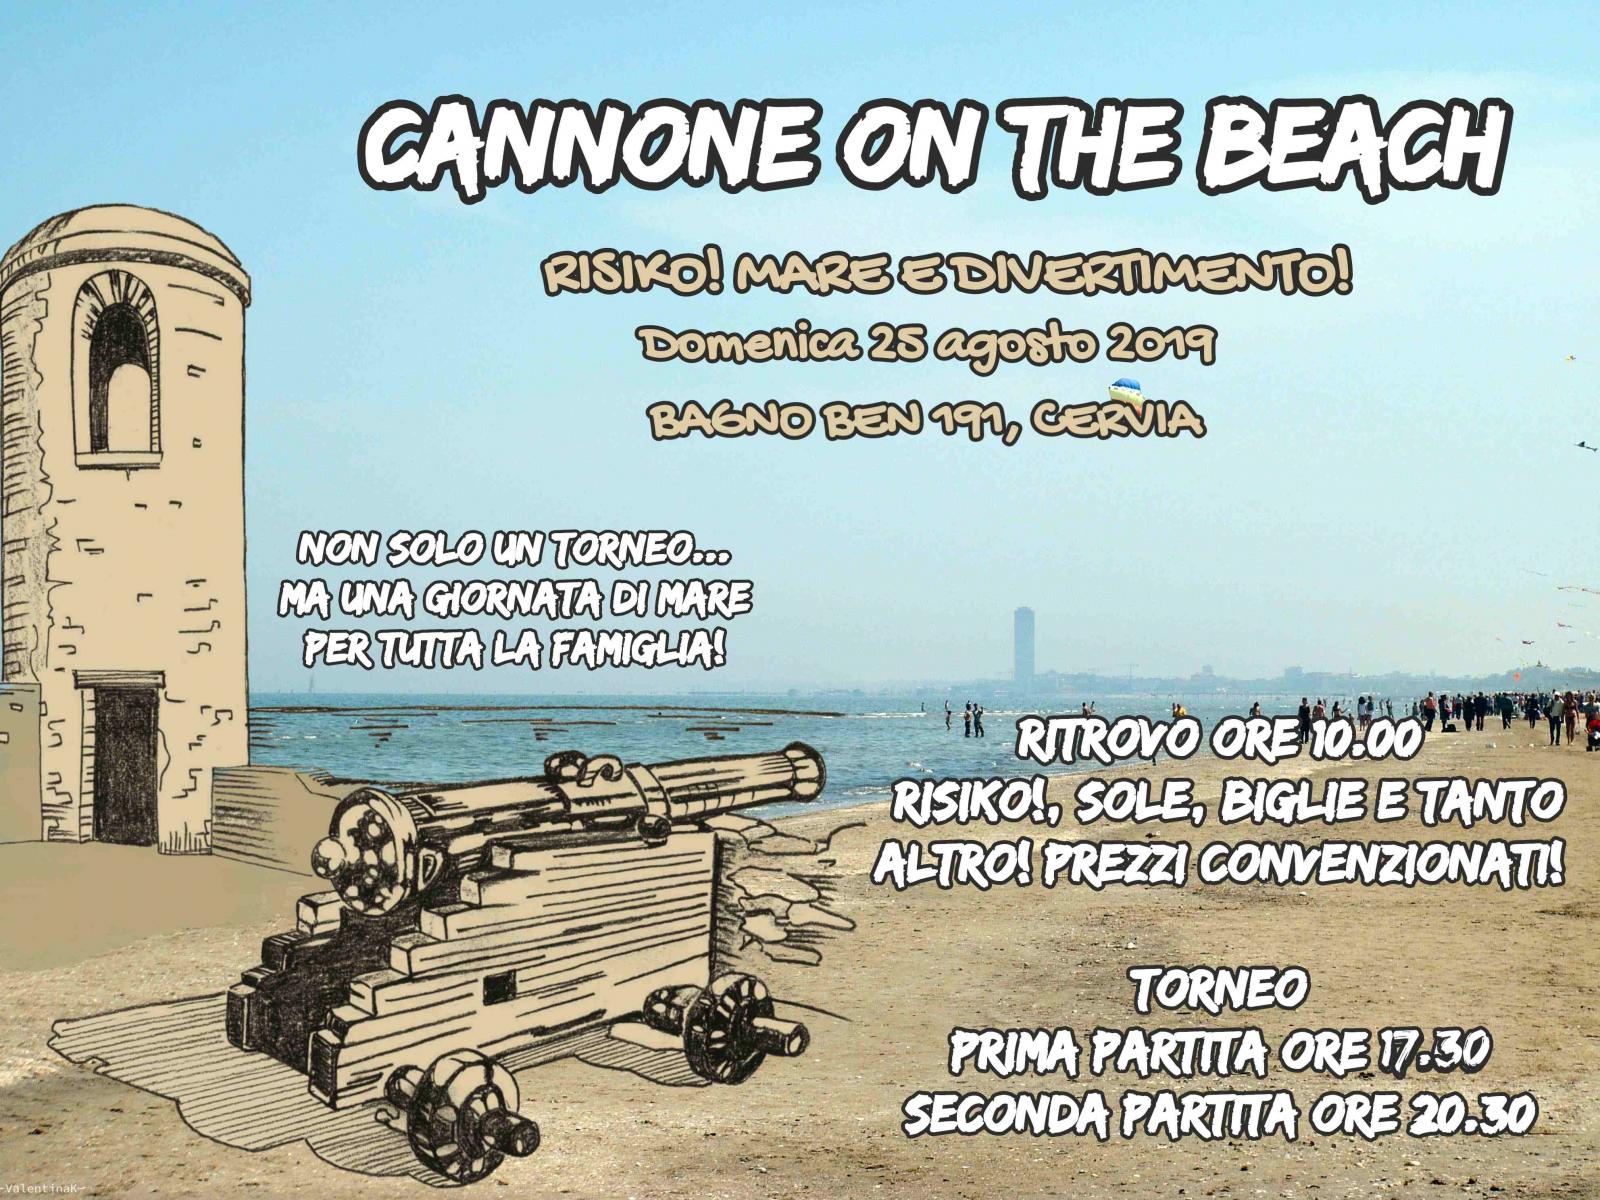 Nome:   Cannone on the Beach 2019 - 25 agosto 2019 (2).jpg
Visite:  178
Grandezza:  340.9 KB